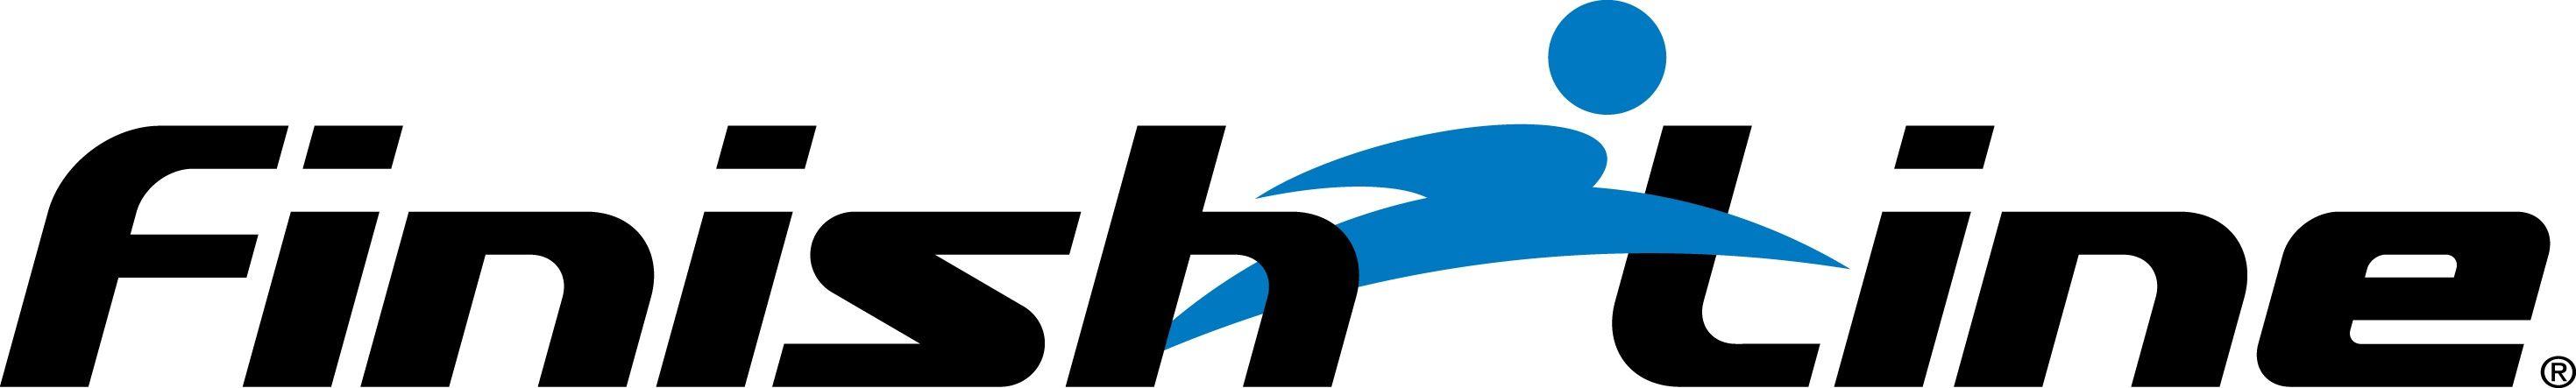 Finishline Logo - Finish line Logos